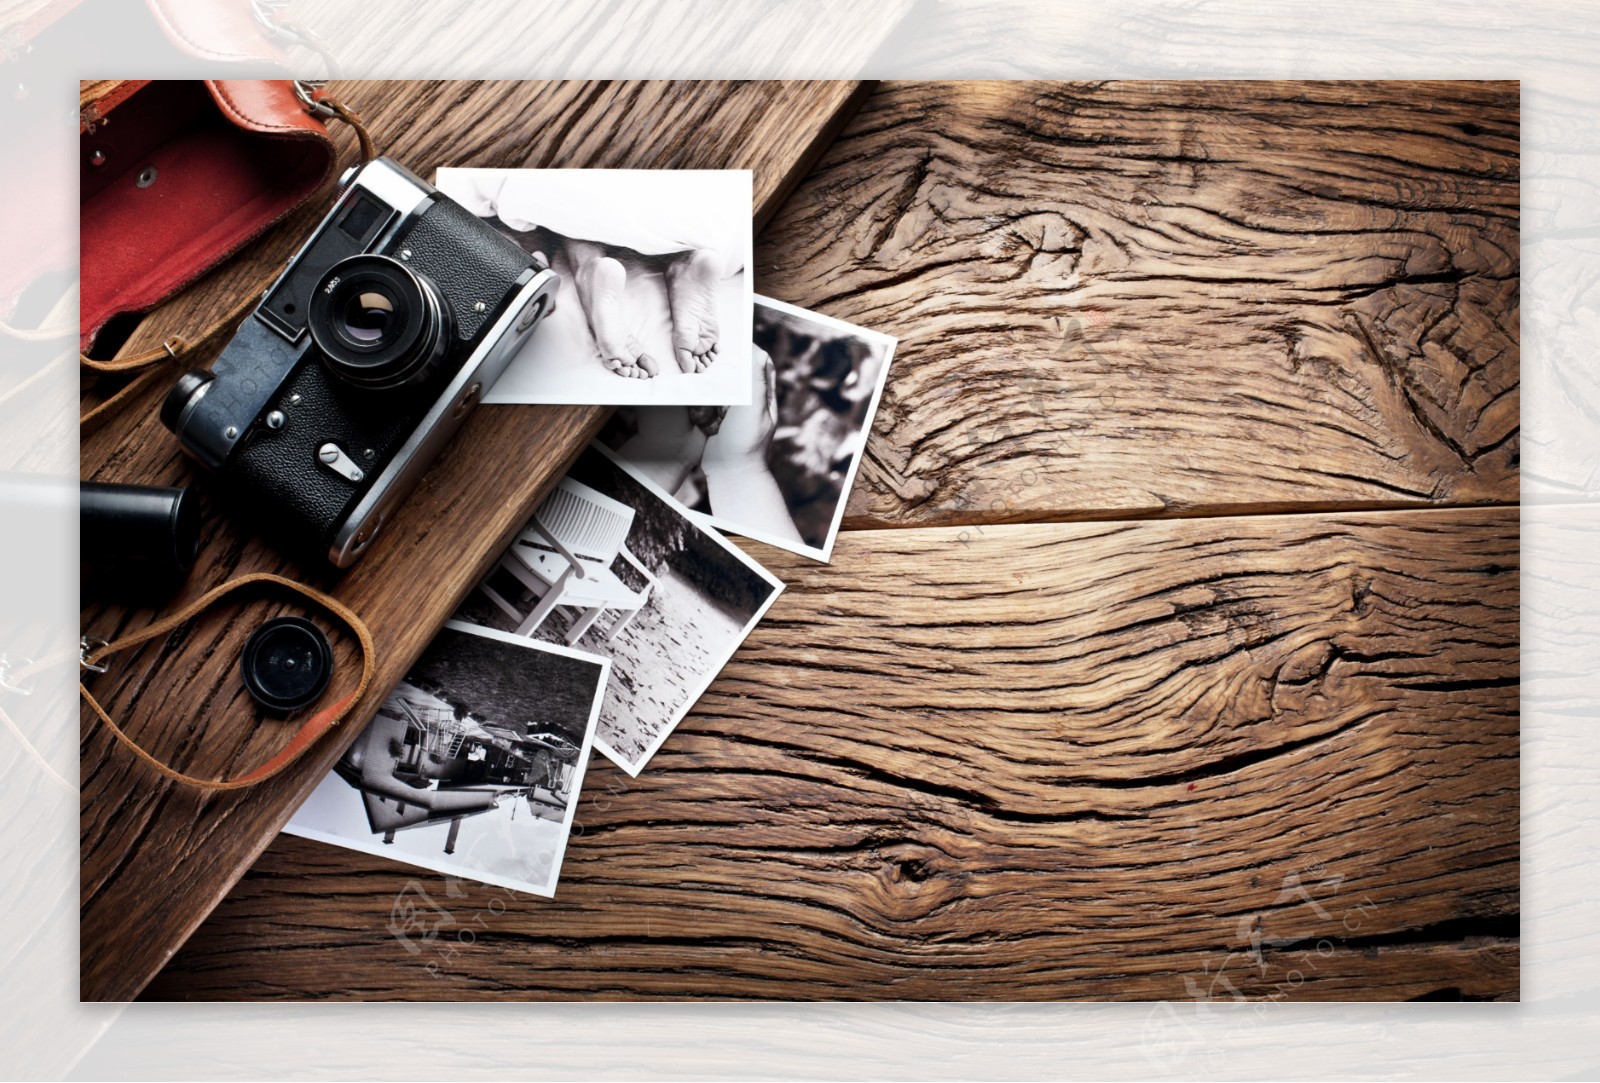 木板上的相机和旧照片图片